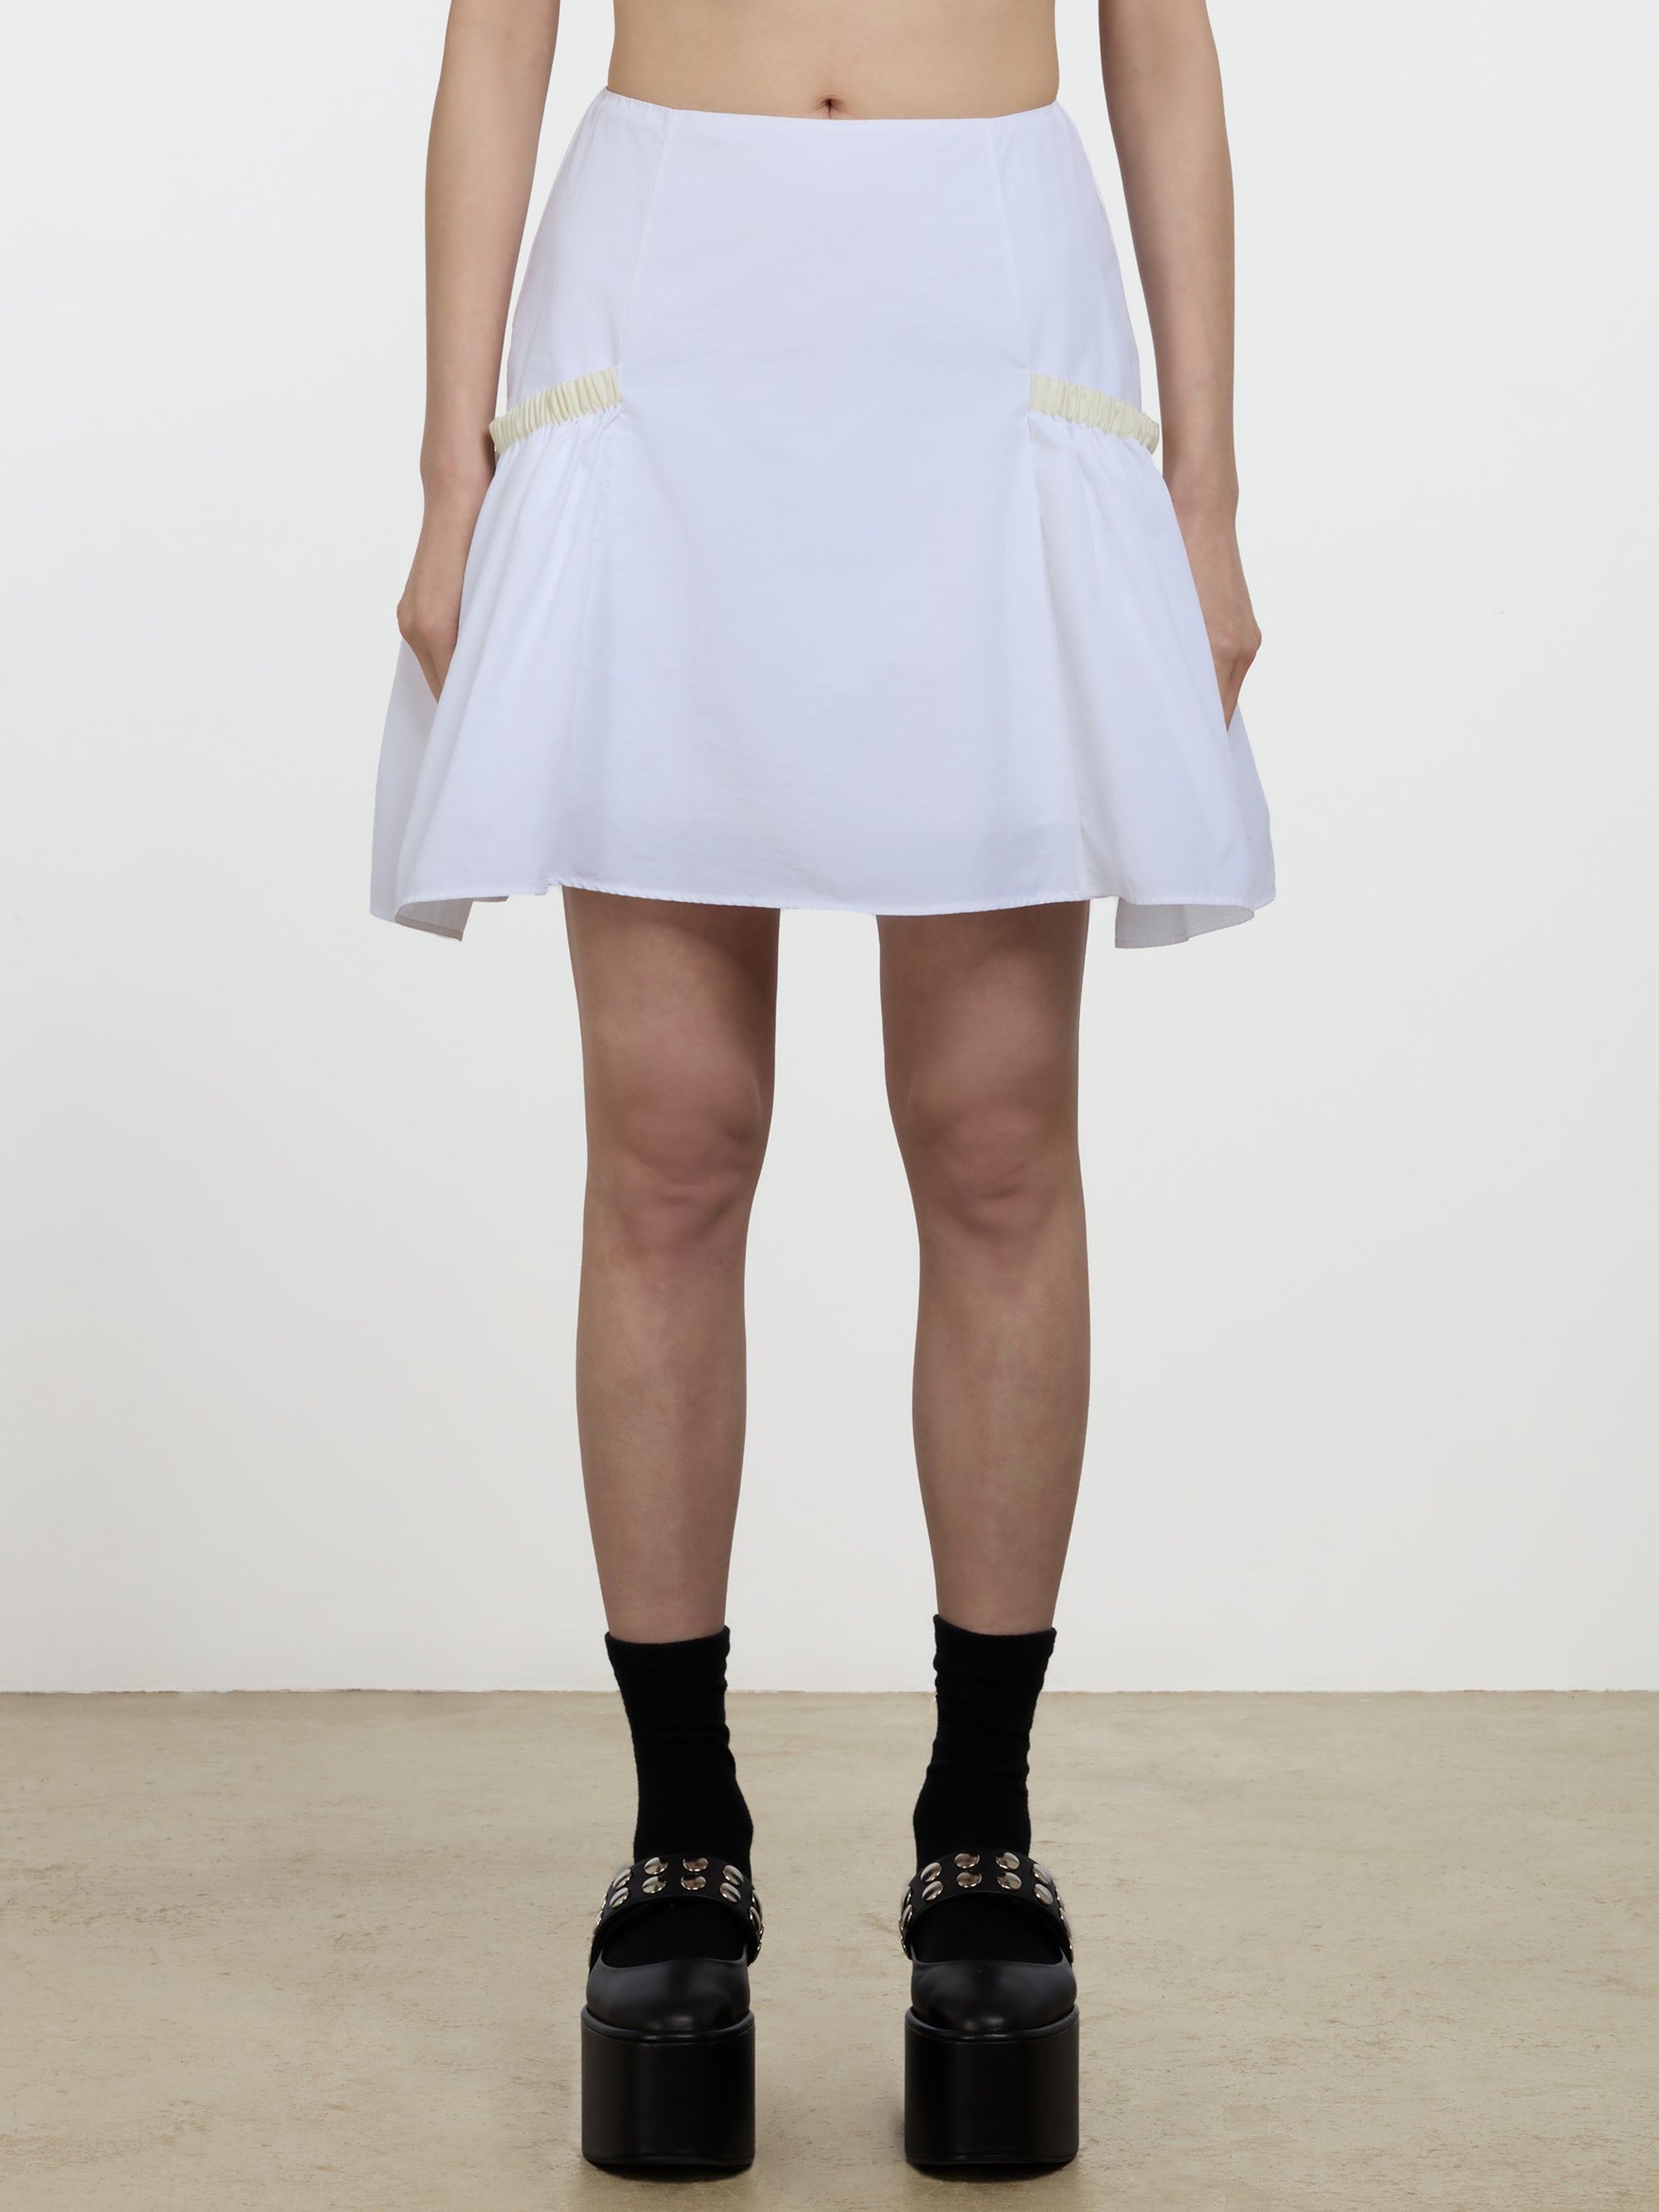 Molly Goddard - Kasha Mini Skirt - (White/Cream) view 1